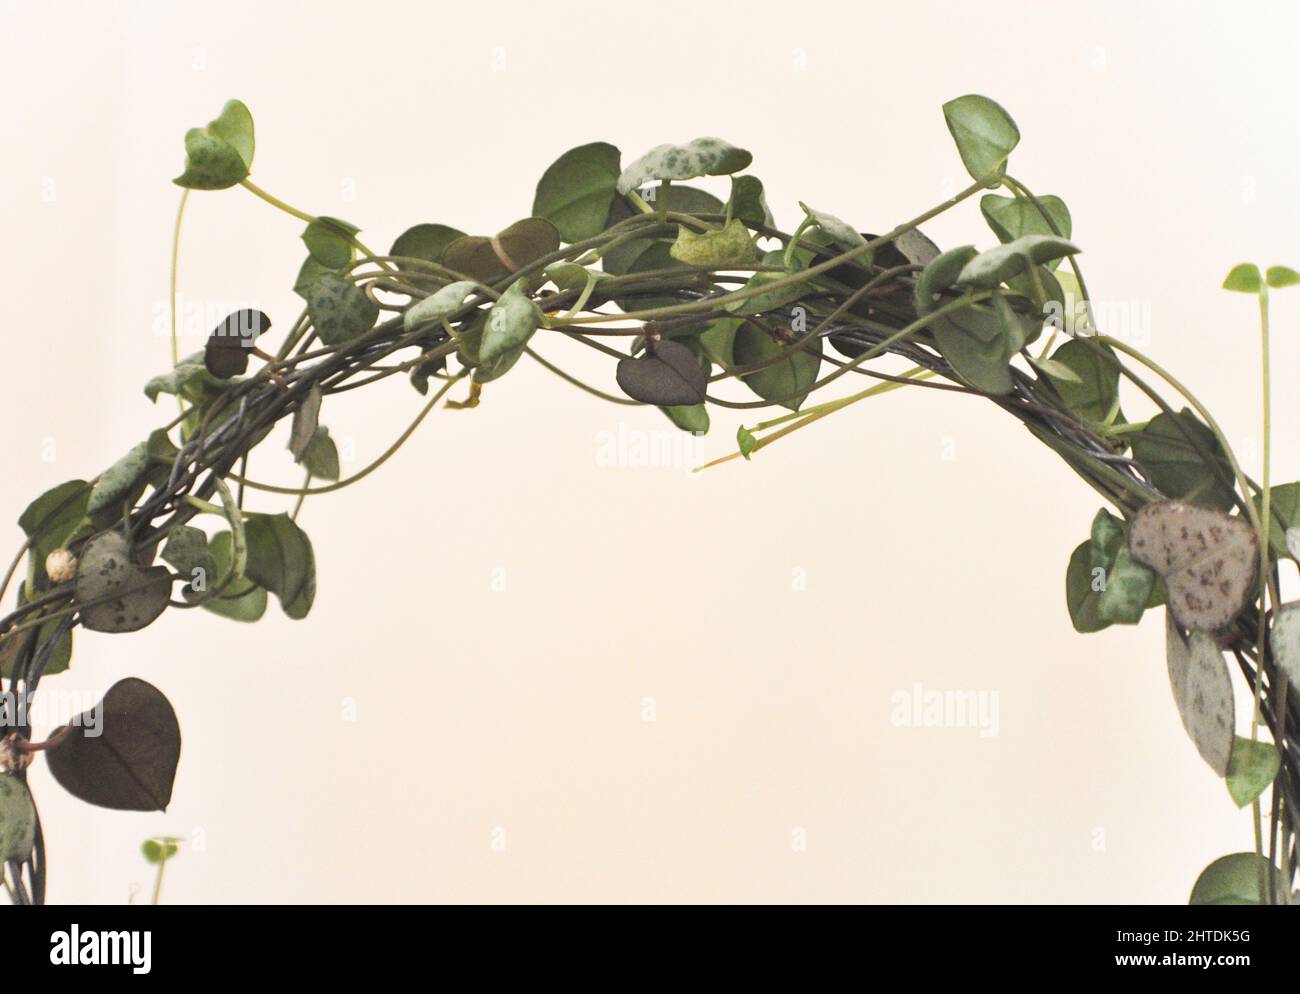 Une chaîne de coeurs (Ceropegia woodii) - plante traînante qui a été formée à se développer autour d'une boucle de fil sur un fond blanc Banque D'Images